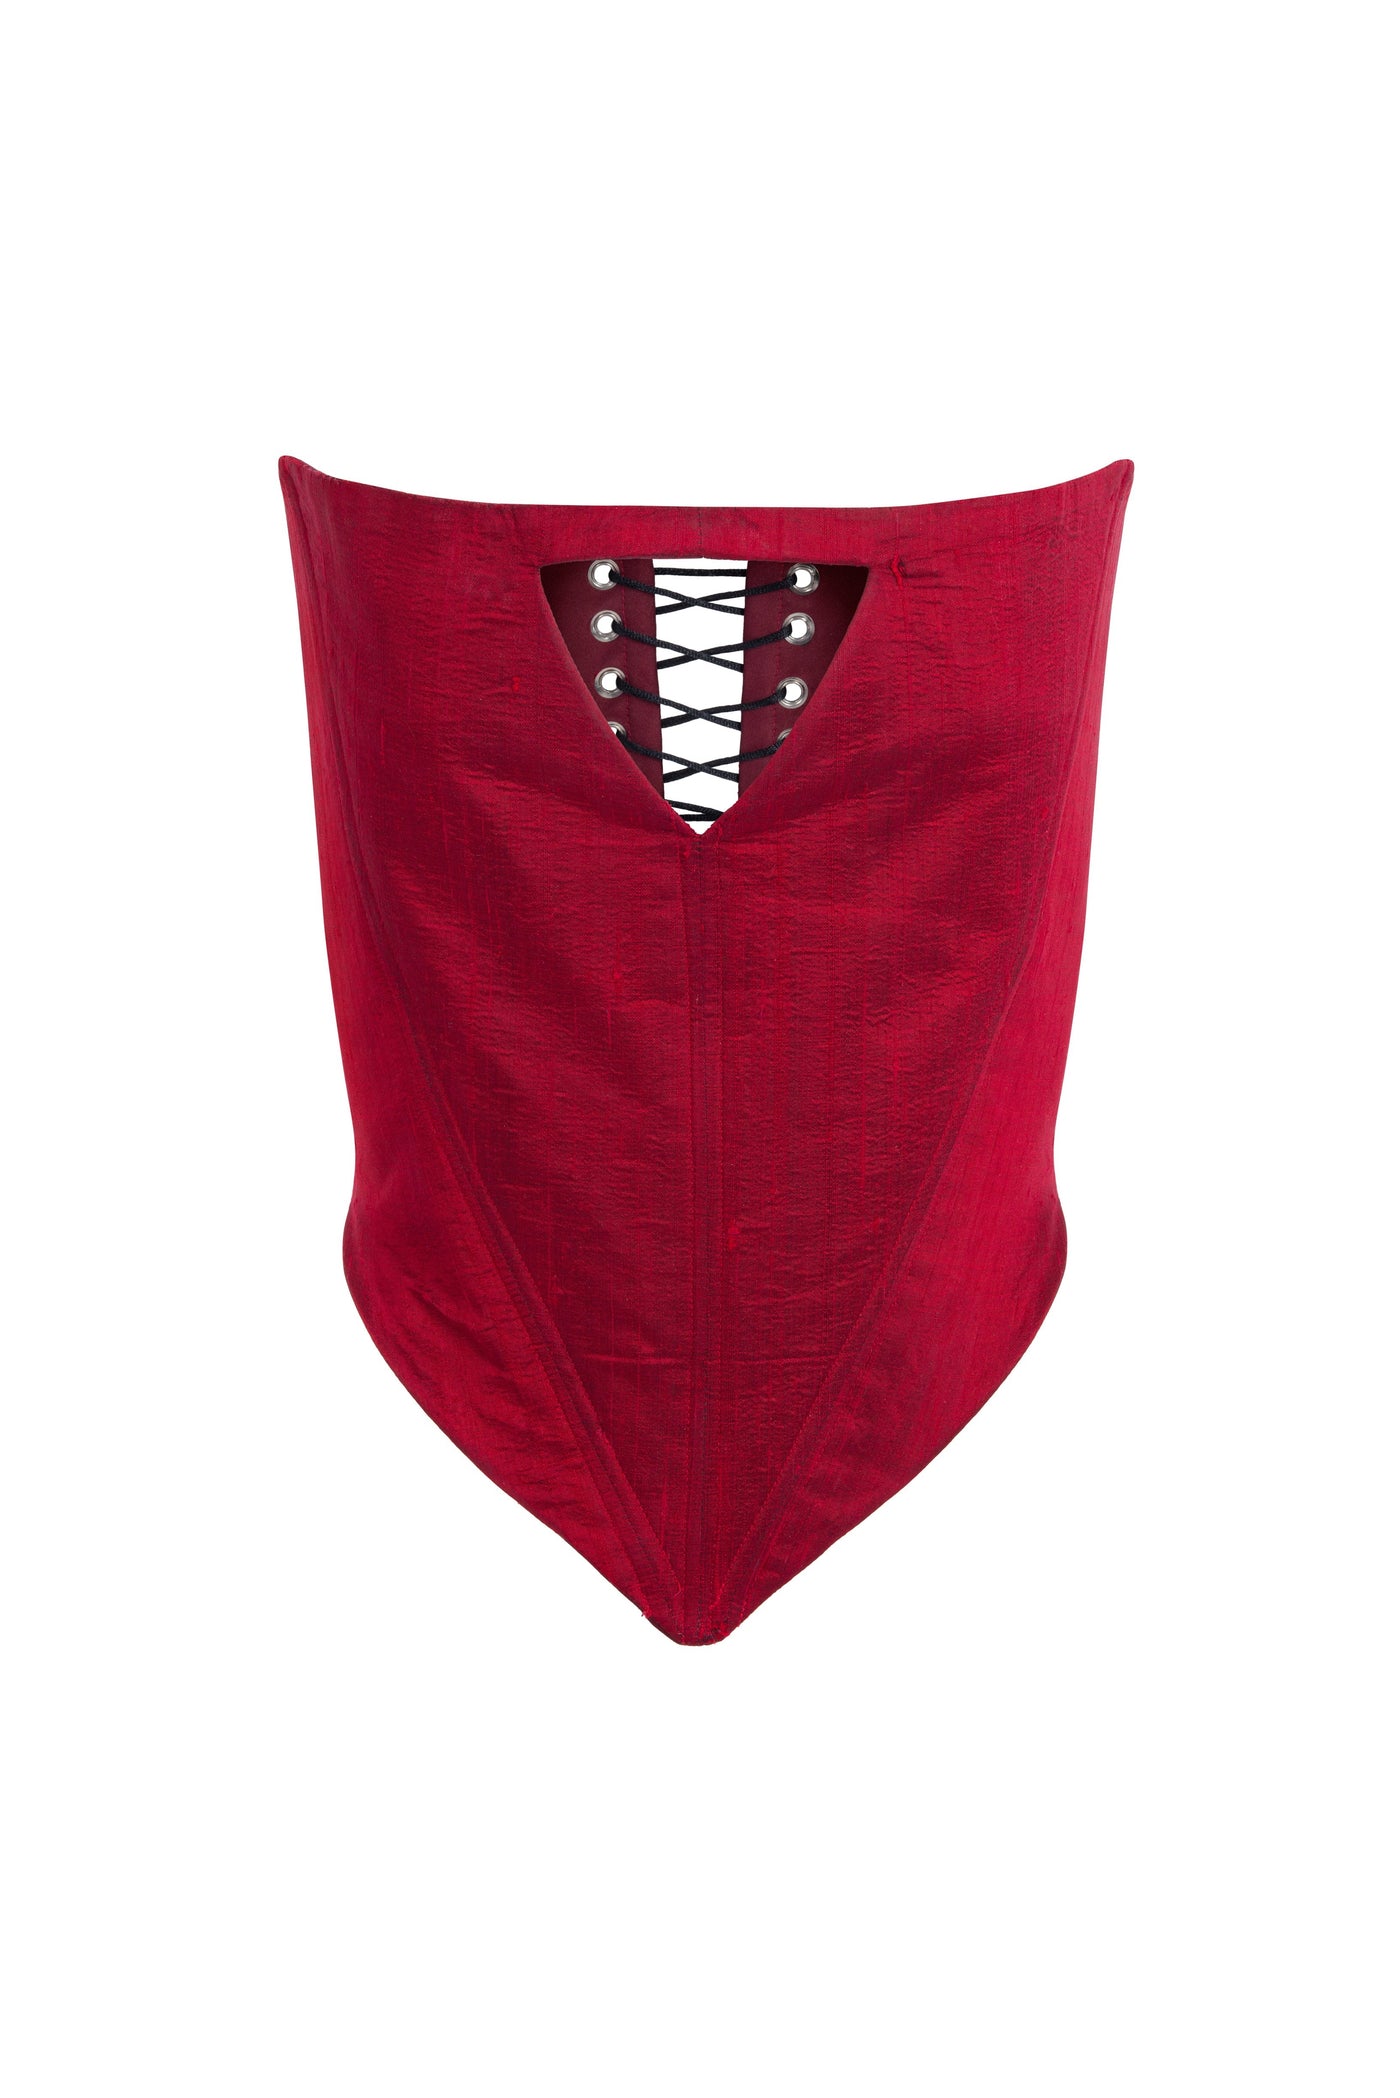 Red vamp corset